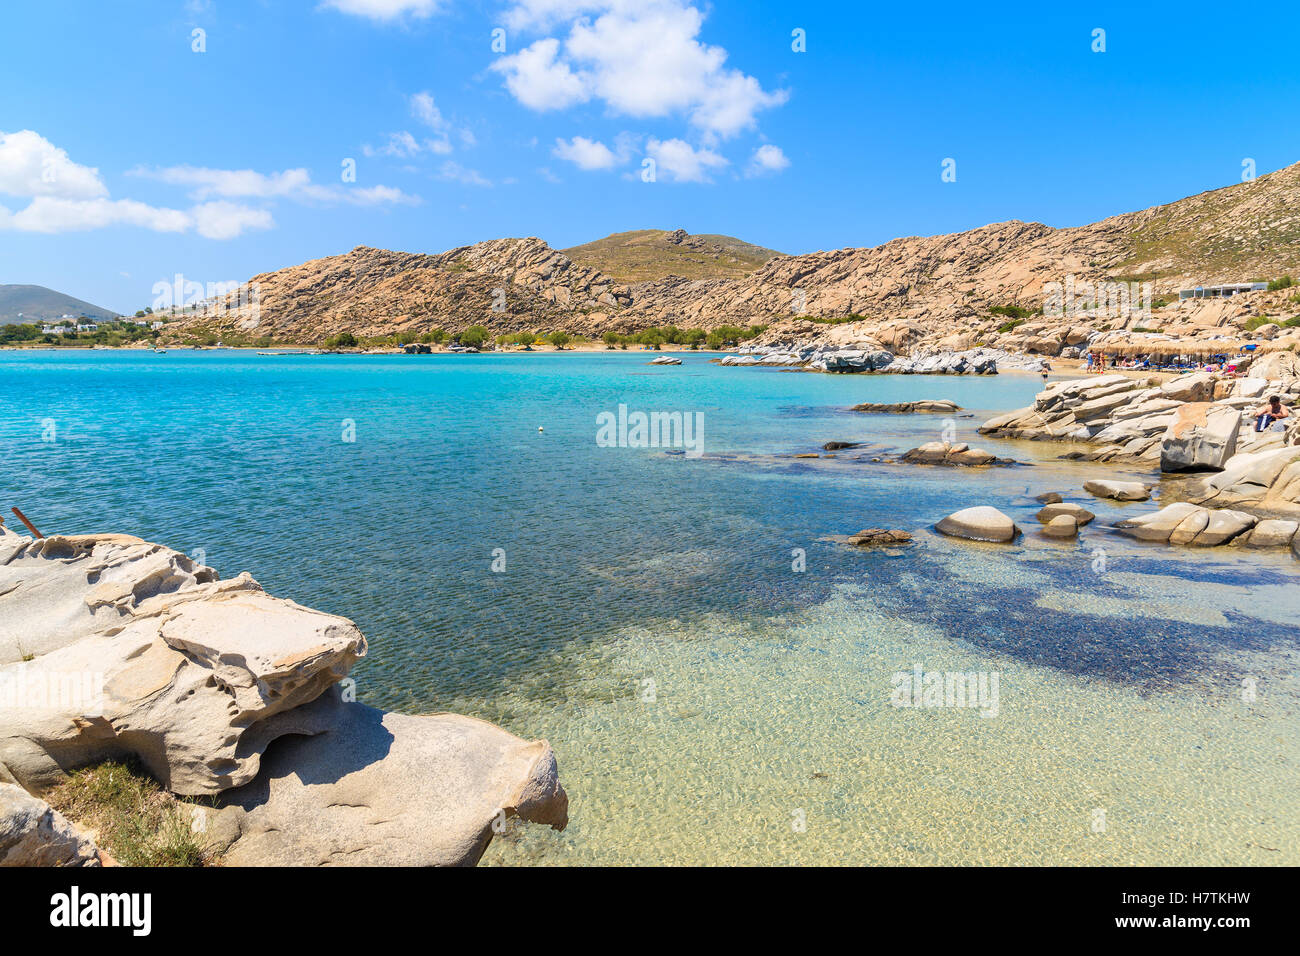 Clair comme de l'eau de mer turquoise de Kolymbithres beach, l'île de Paros, Grèce Banque D'Images